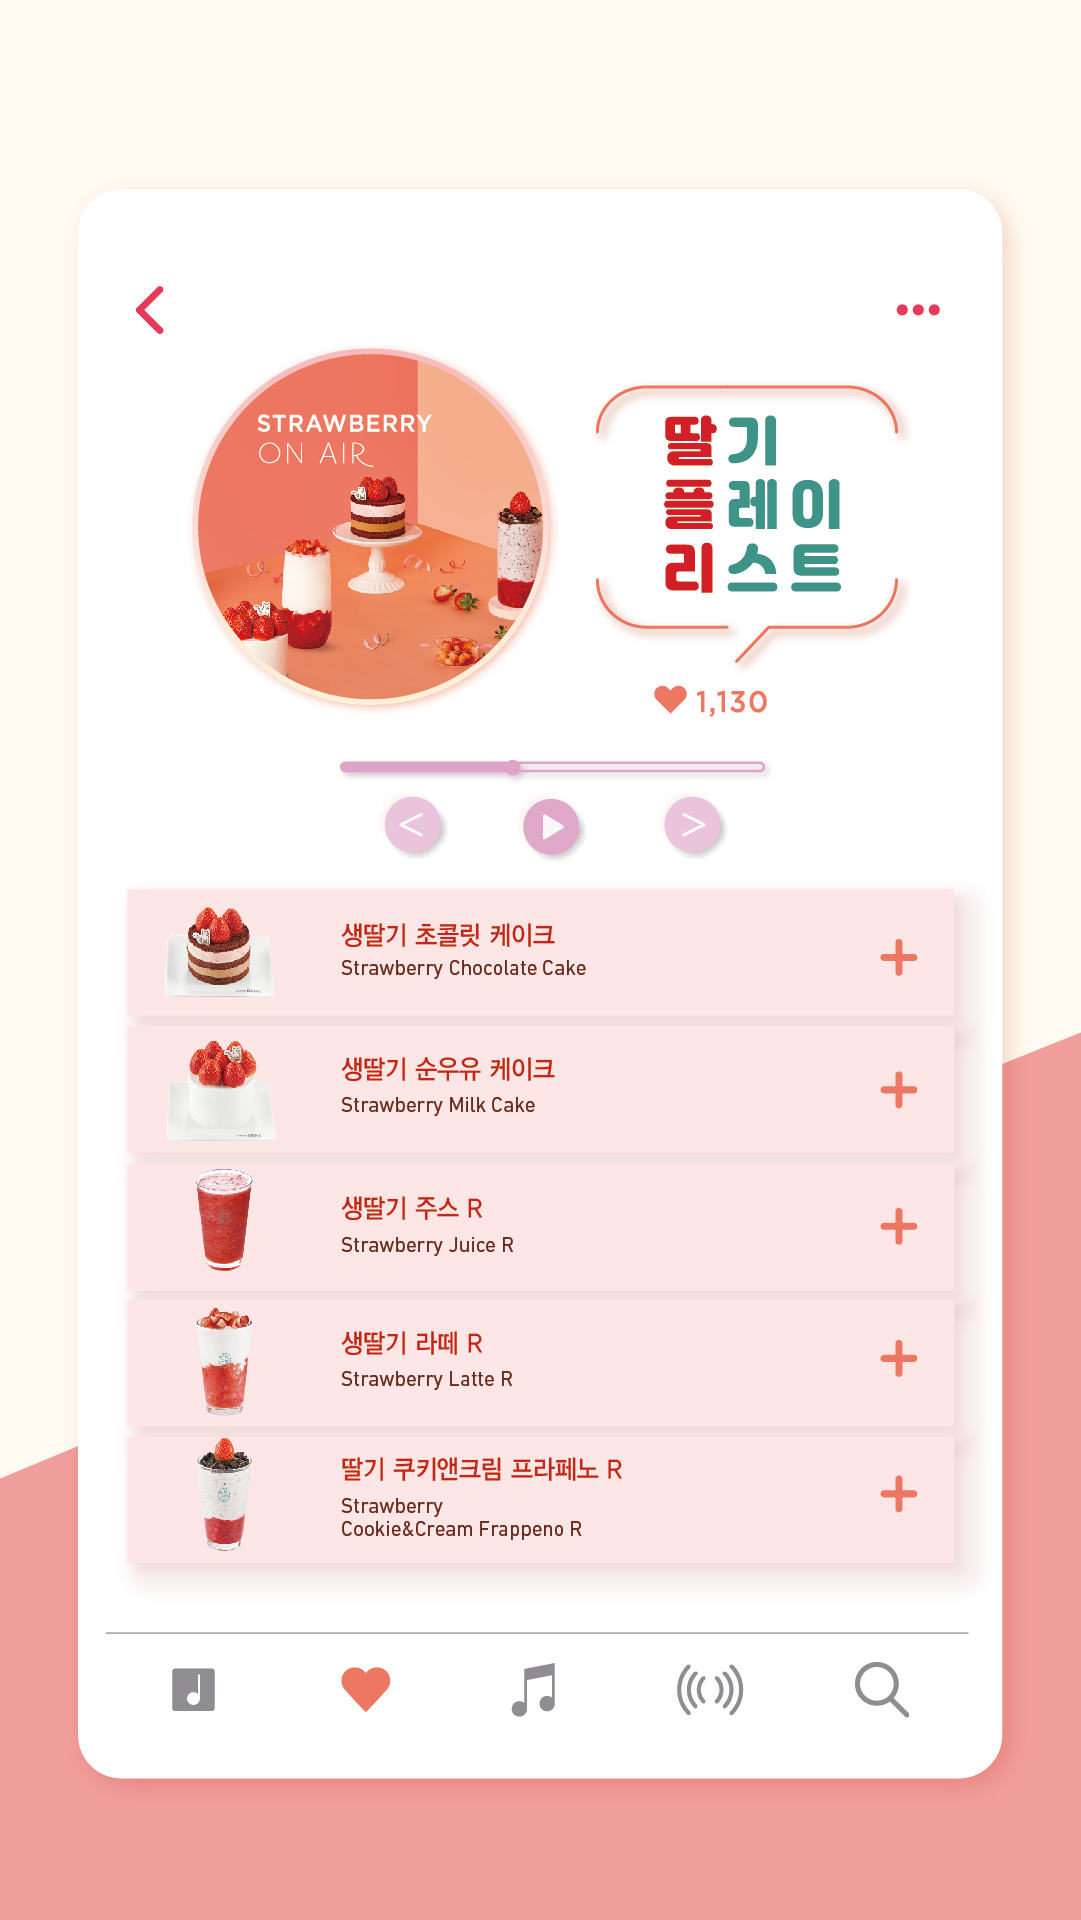 [카페베네] 설향 생딸기 듬뿍 딸기 신메뉴 출시!